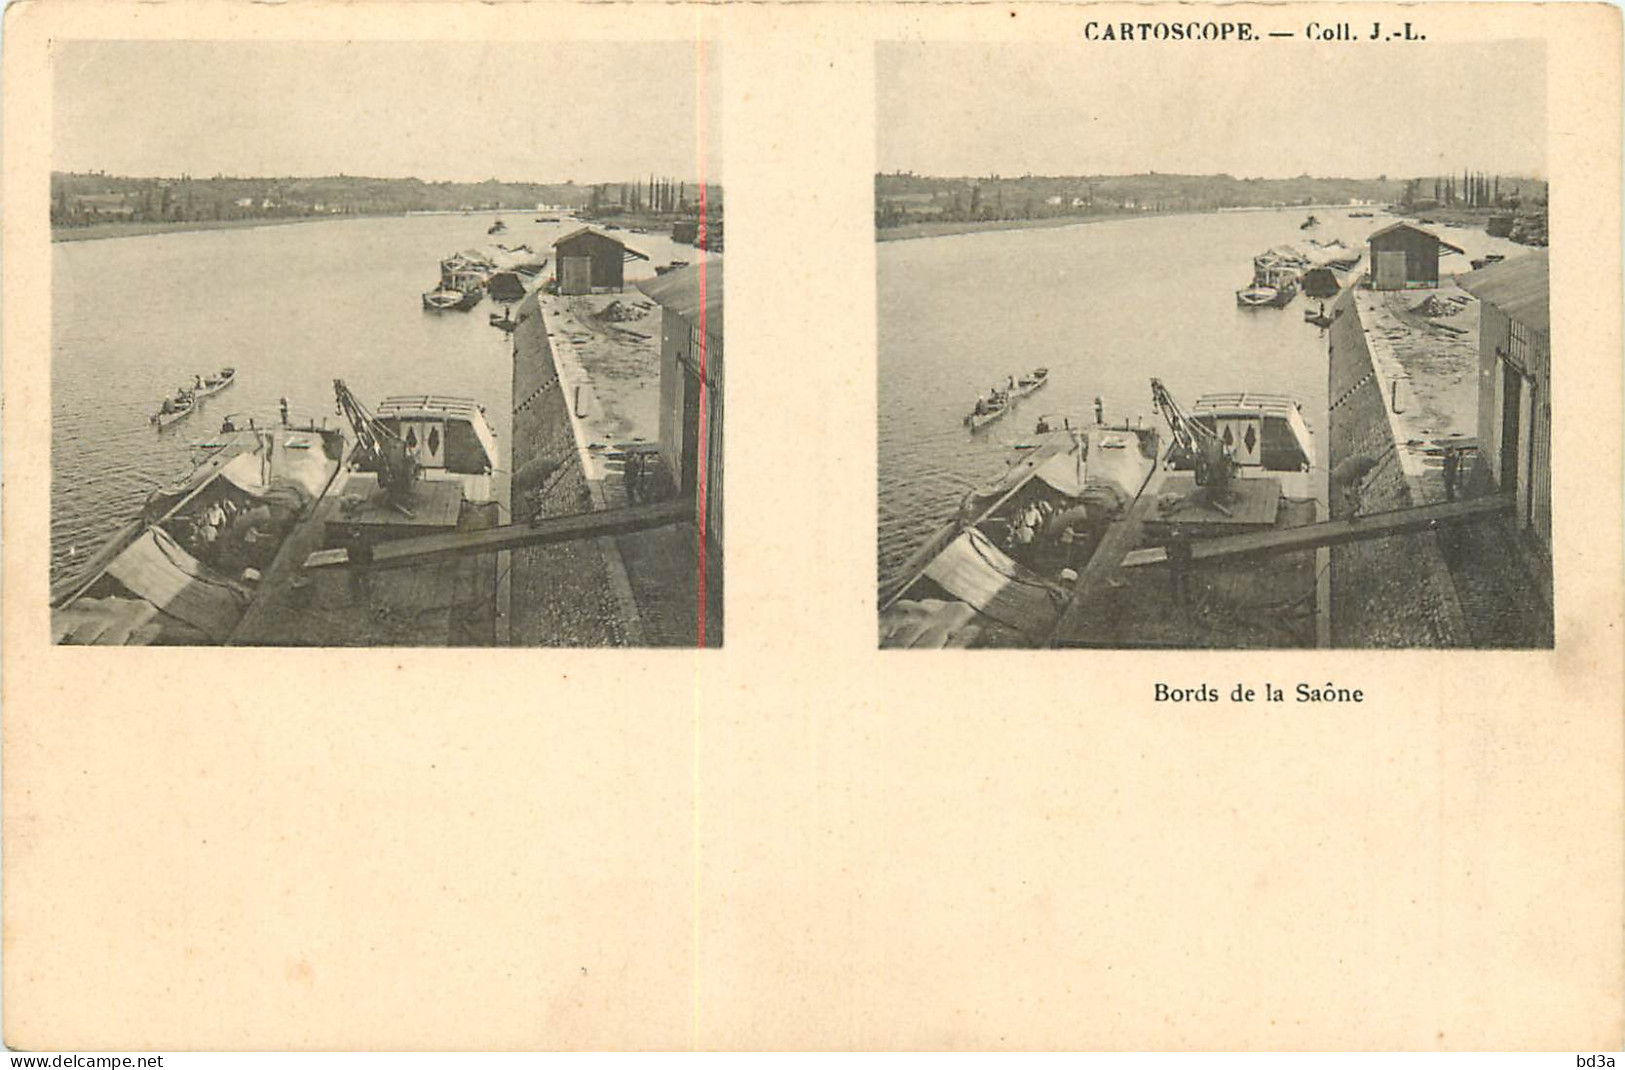 CARTE STEREOSCOPIQUE - BORDS DE LA SAONE - CARTOSCOPE - COLL J.L. - Cartoline Stereoscopiche